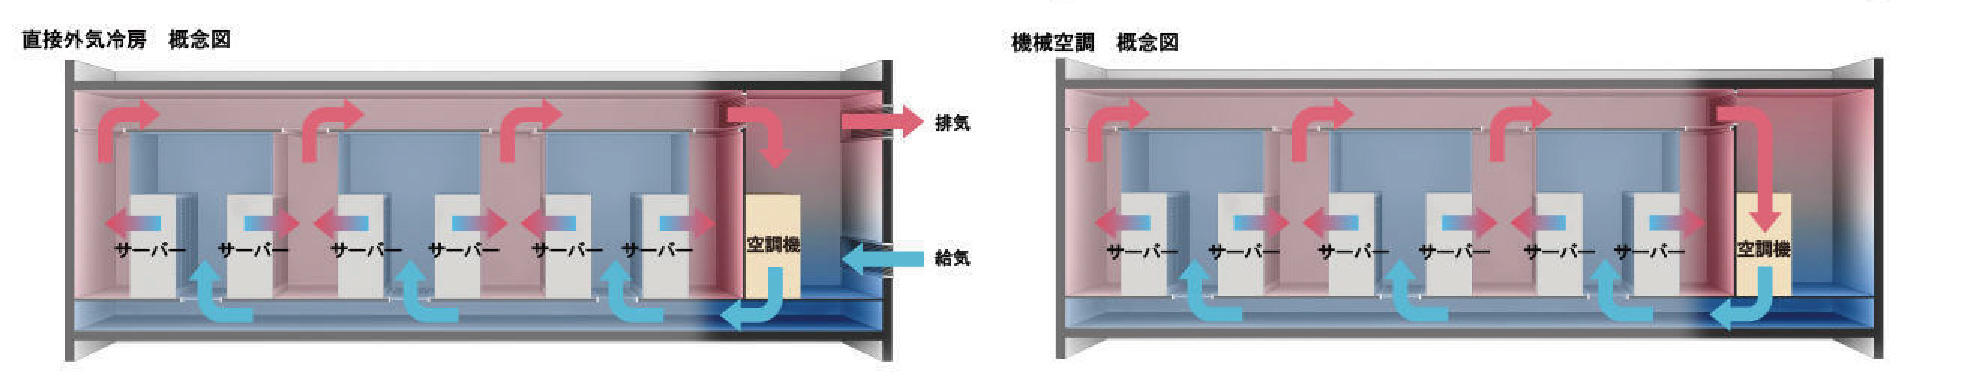 直接外気冷房概念図と機械空調概念図